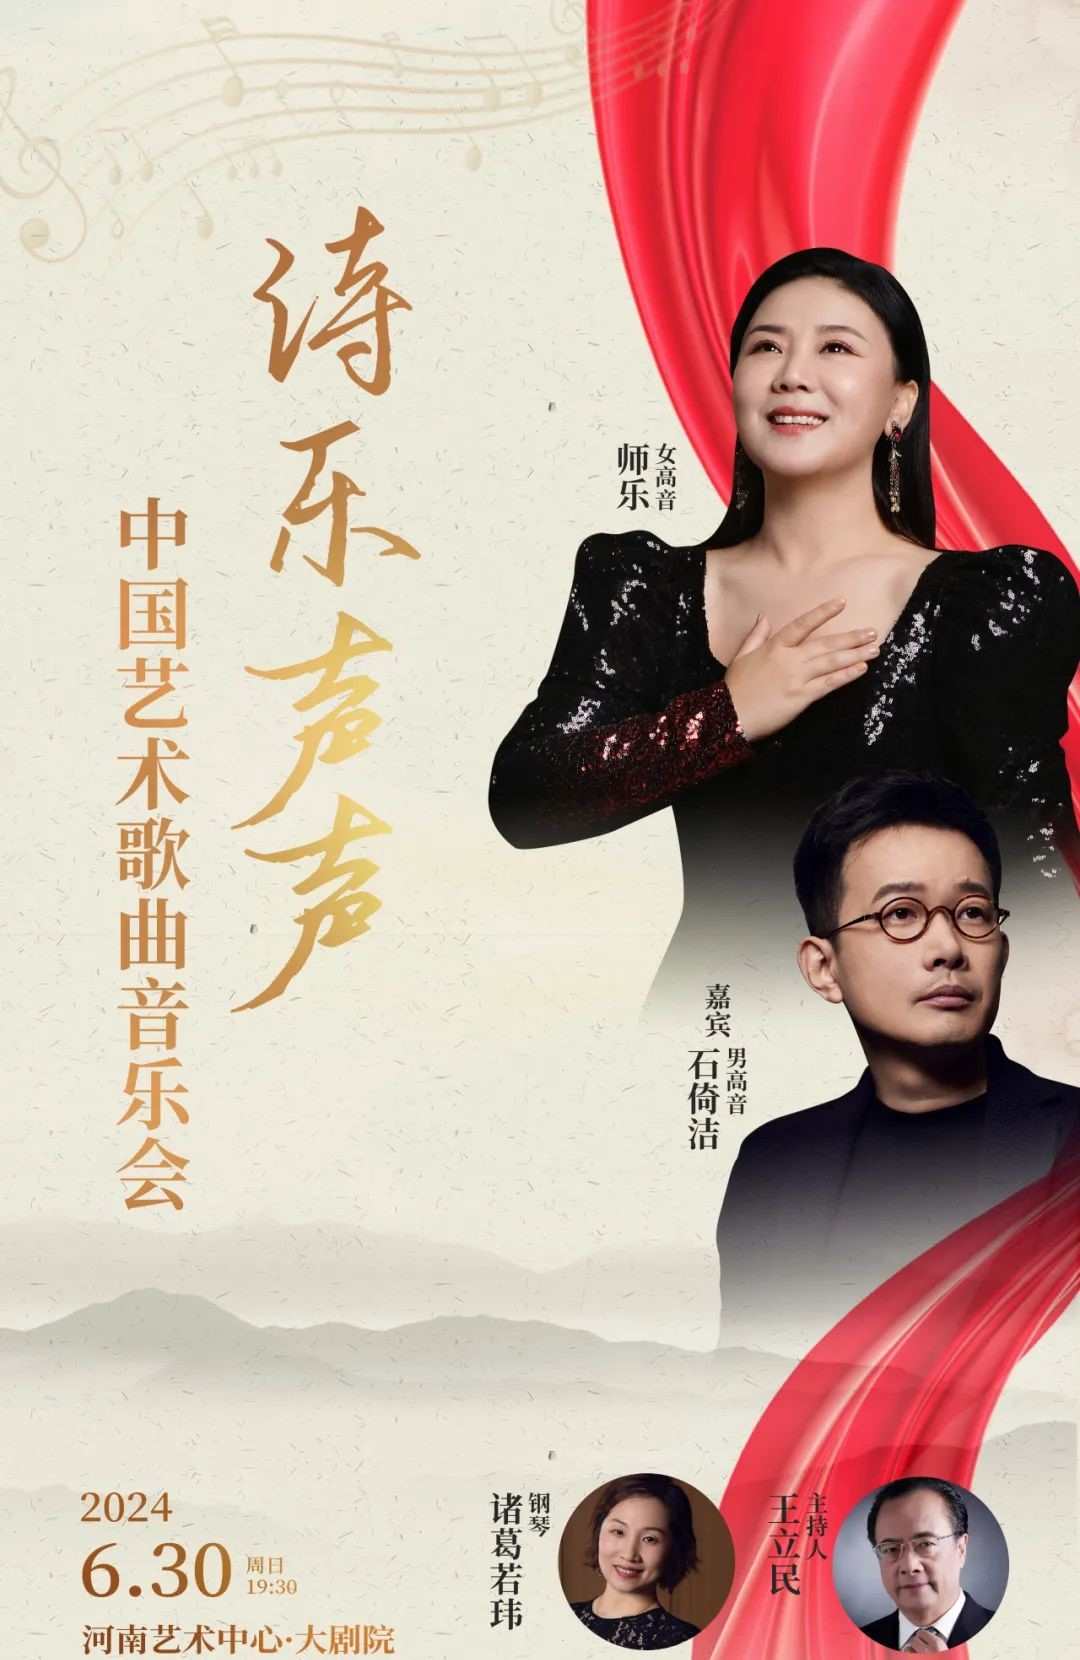 【郑州】【魅力古典音乐季】 《诗乐声声--中国艺术歌曲音乐会》